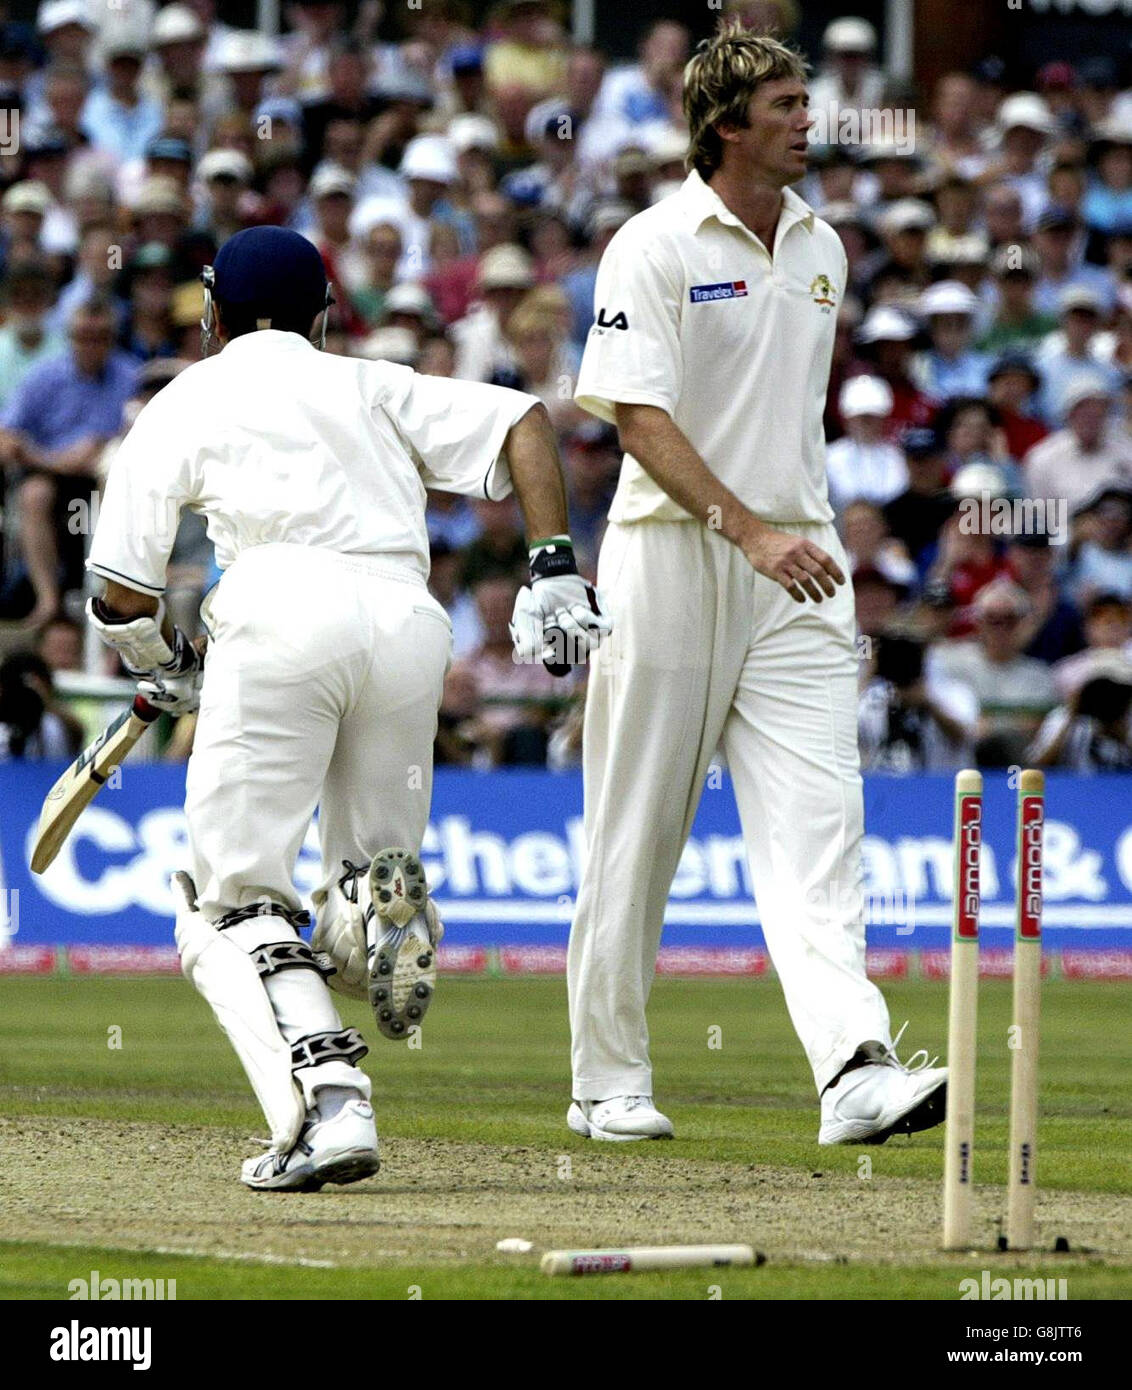 Cricket - The Ashes - Npower Third Test - Inghilterra / Australia - Old Trafford. Inghilterra il battitore Michael Vaughan corre un singolo dopo essere stato pulito bowled da un 'no ball' consegnato dall'Australia Glenn McGrath (a destra). Foto Stock